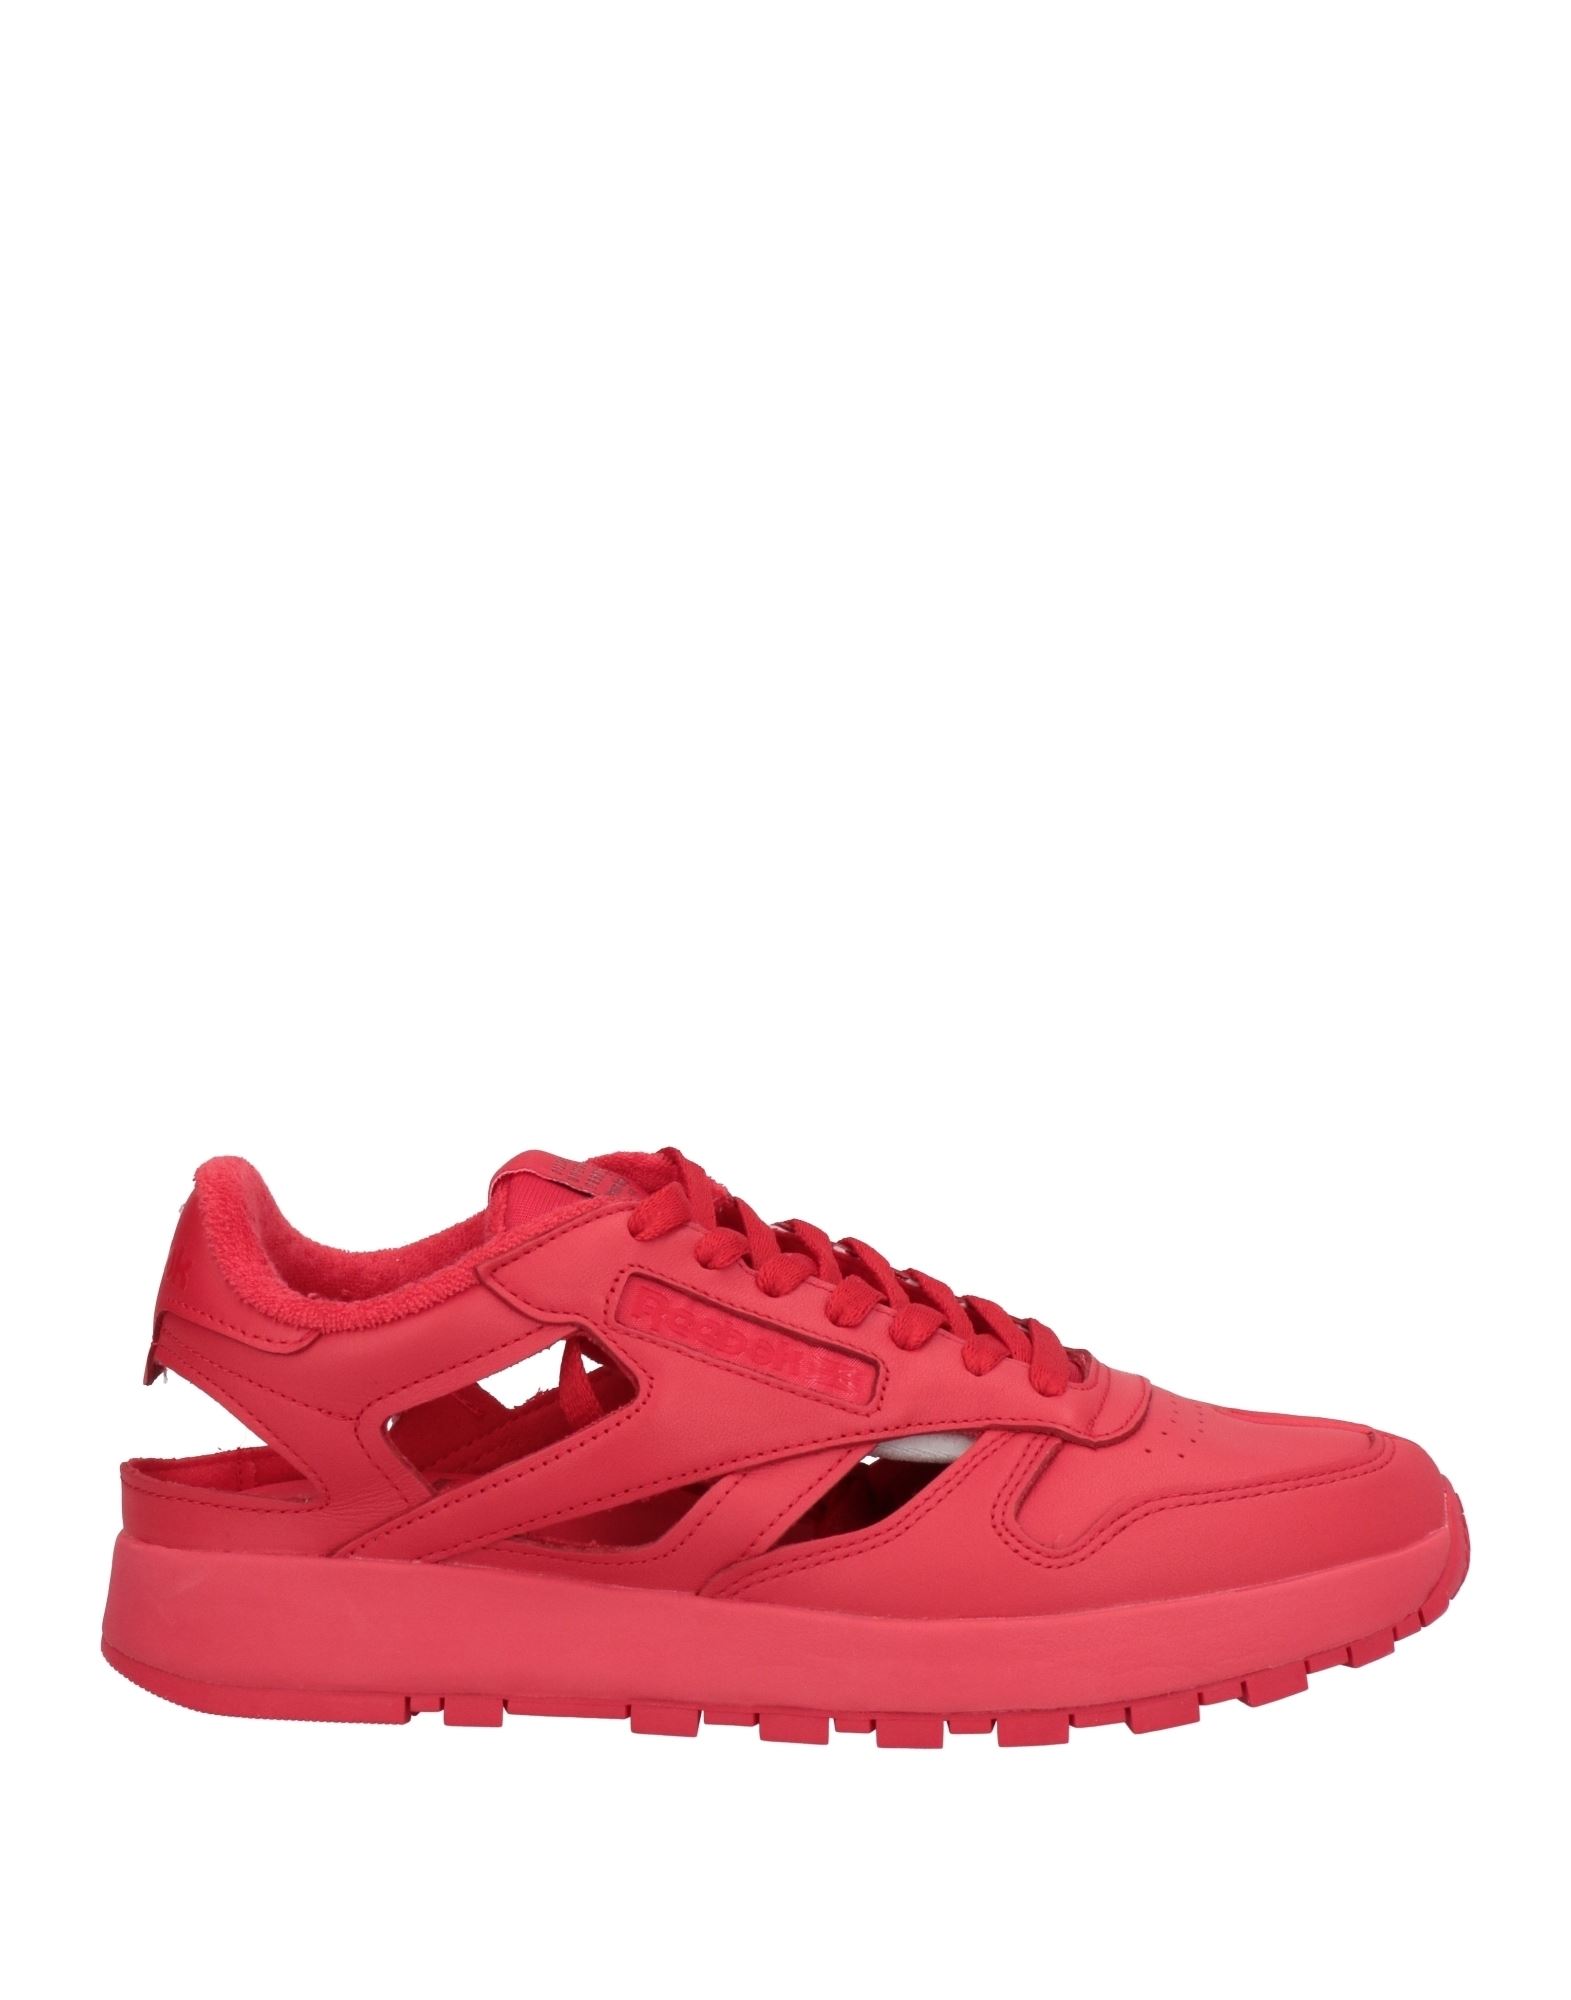 Maison Margiela X Reebok Sneakers In Red